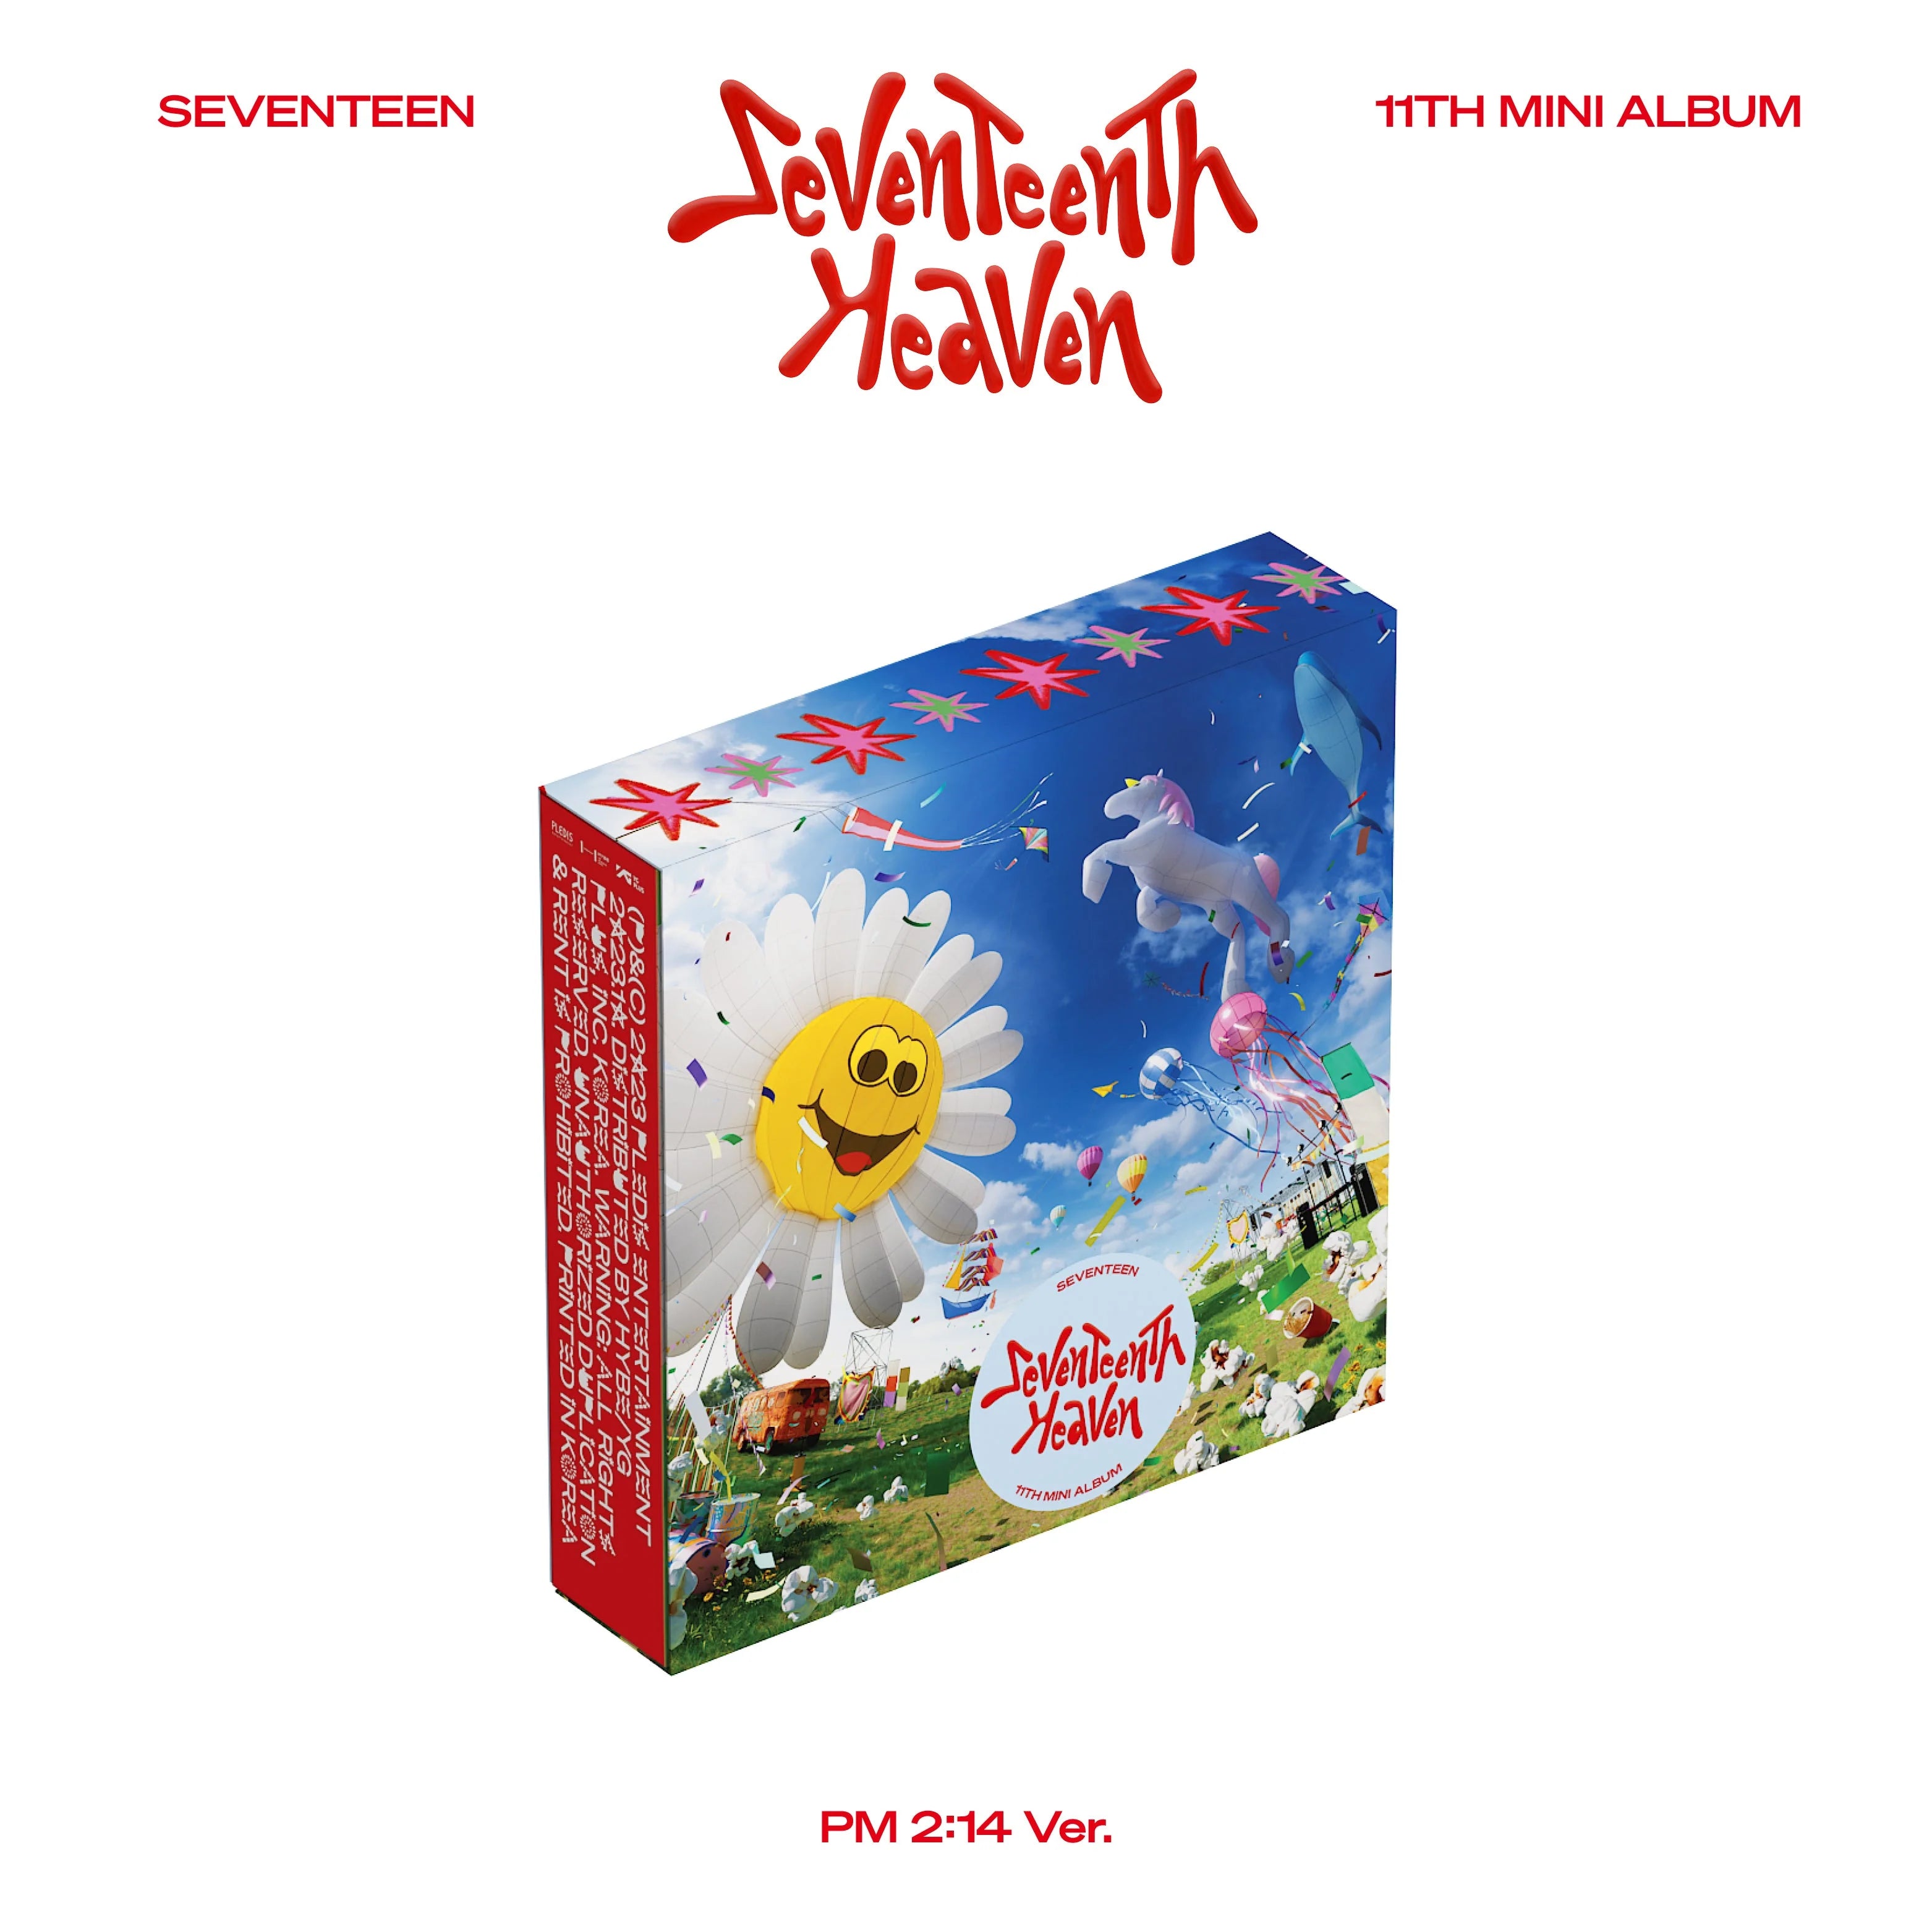 SEVENTEEN 11th Mini Album 'SEVENTEENTH HEAVEN' PM 10:23 Ver. – SEVENTEEN  세븐틴 Official Store